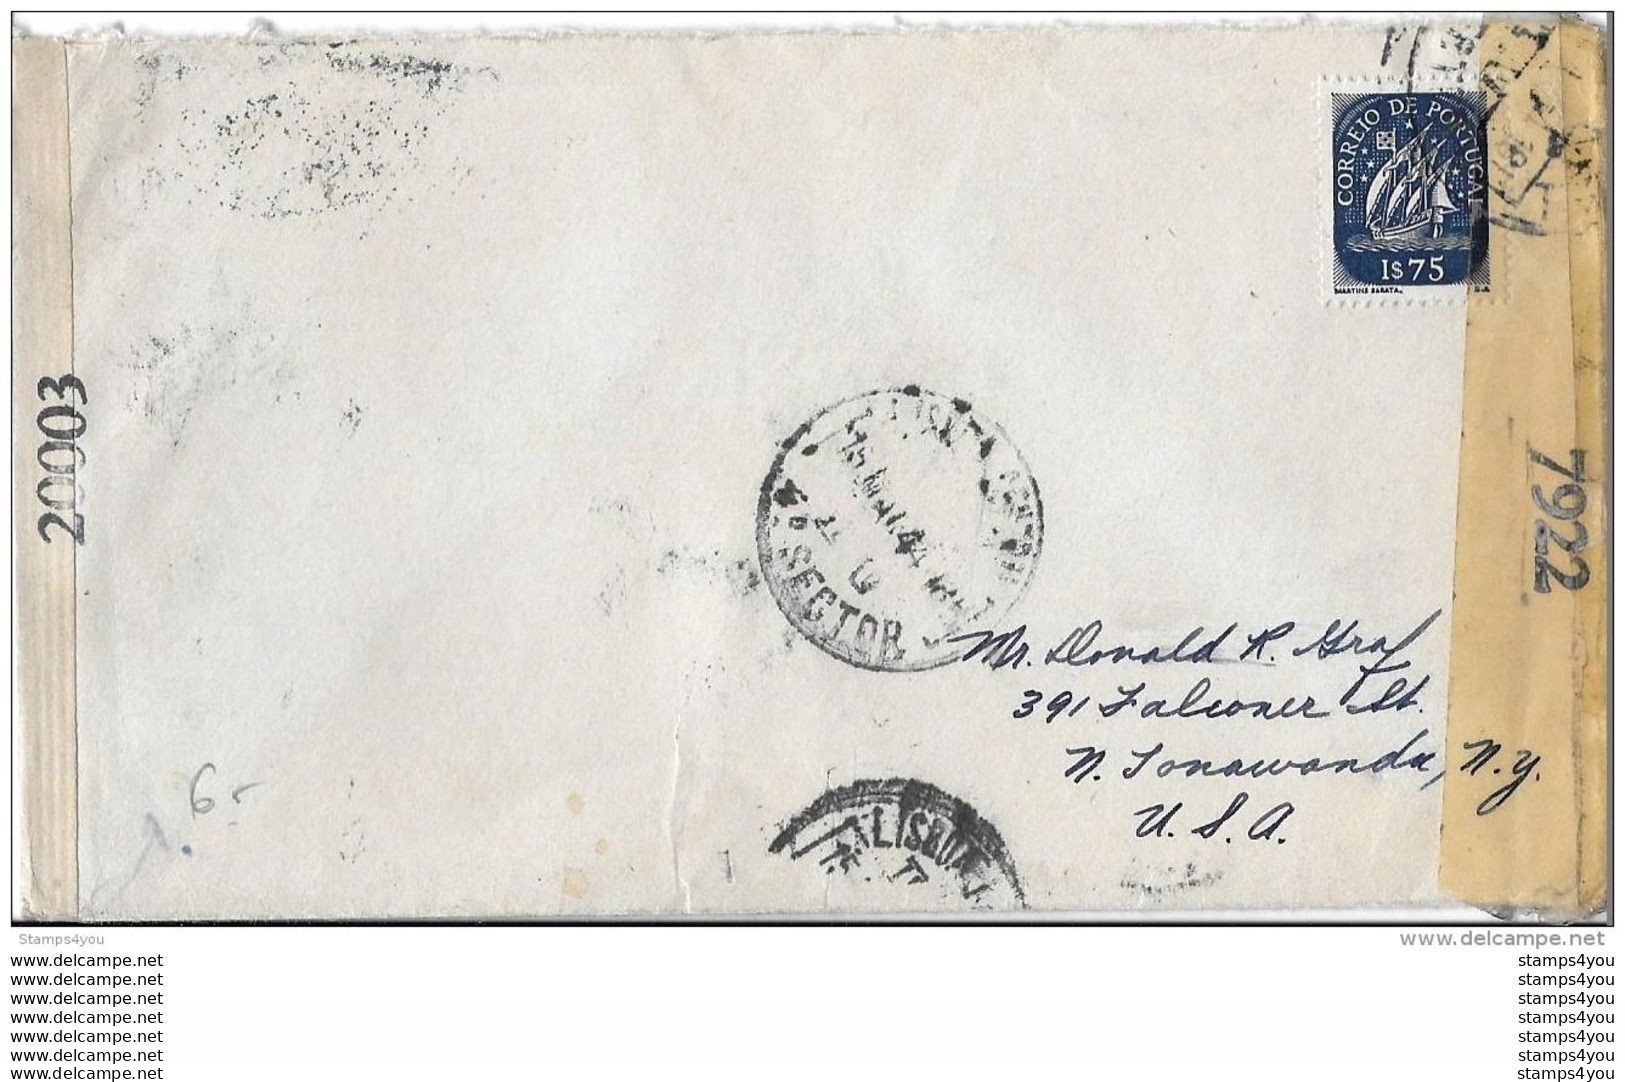 16 - 3 - Enveloppe Envoyée Du Portugal Aux USA 1944 - Censure - Guerre Mondiale (Seconde)